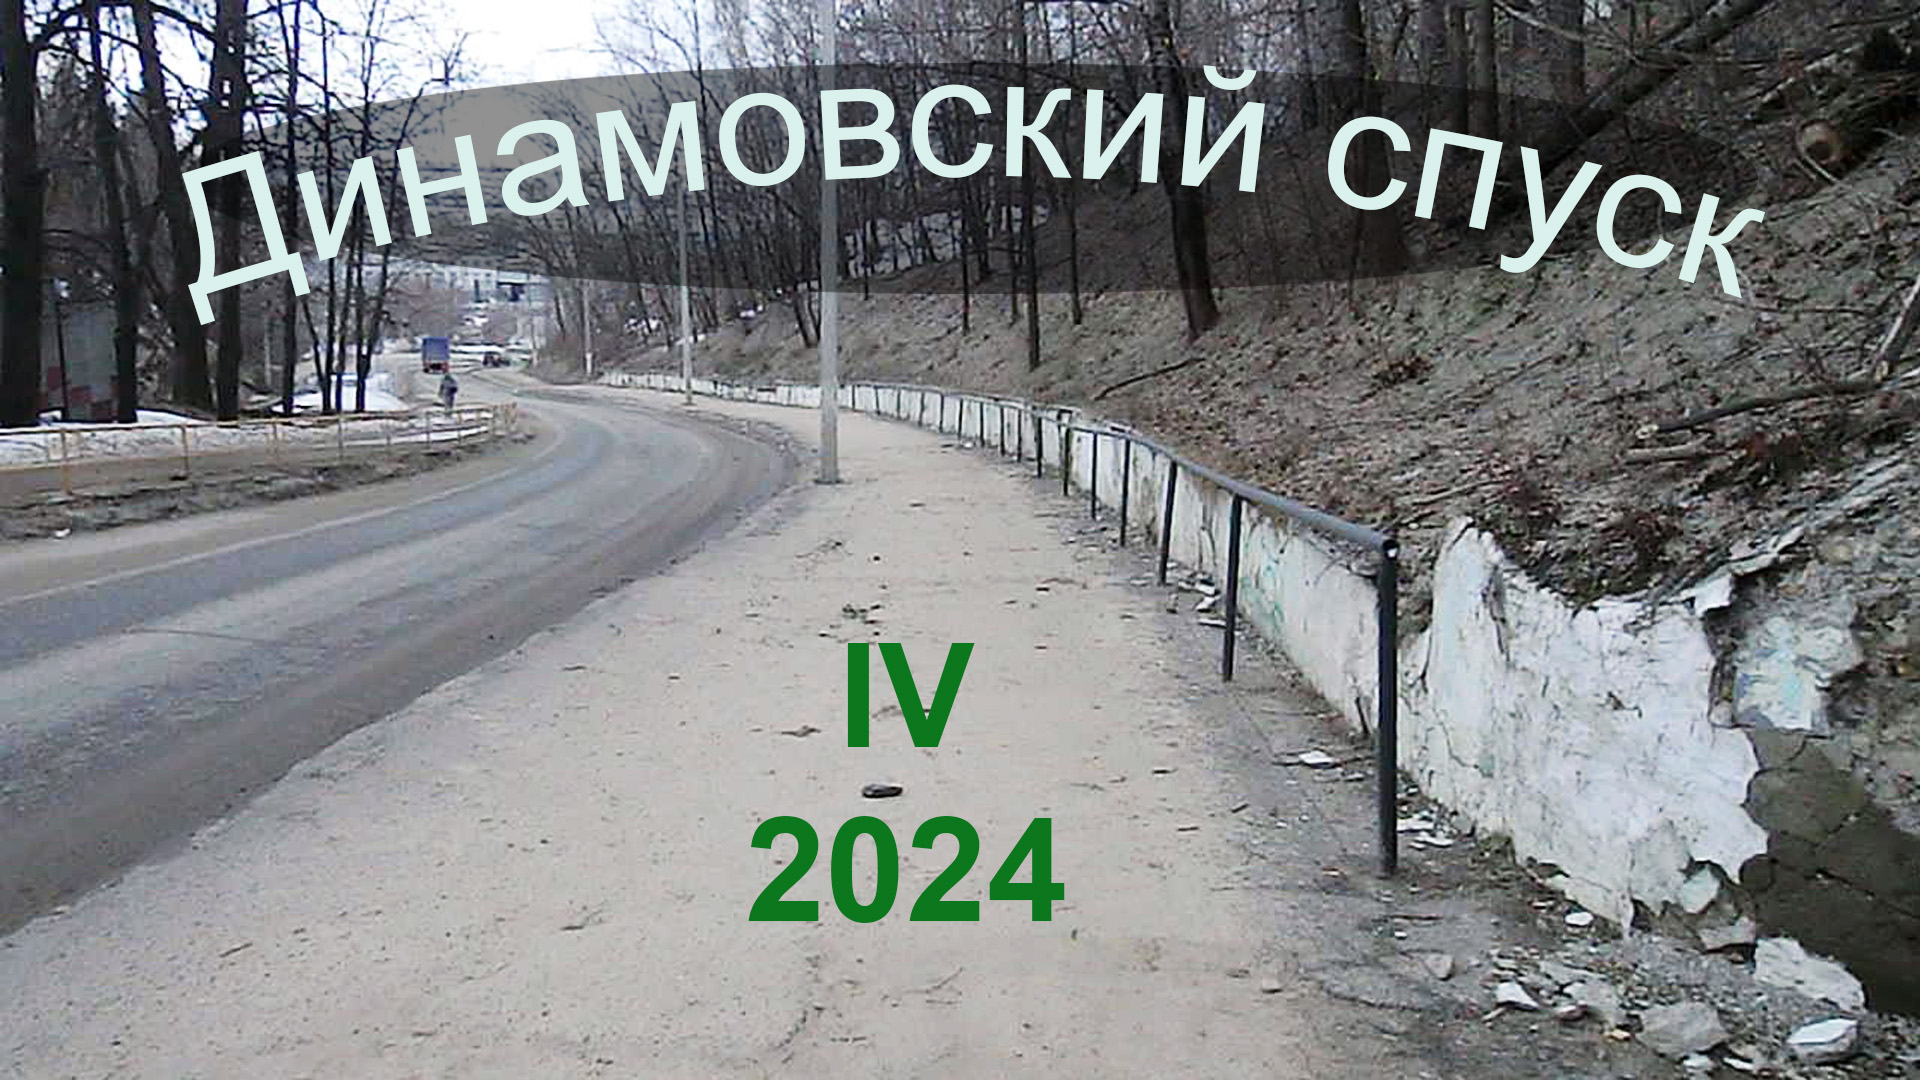 Динамовский спуск, IV/2024,  З-к